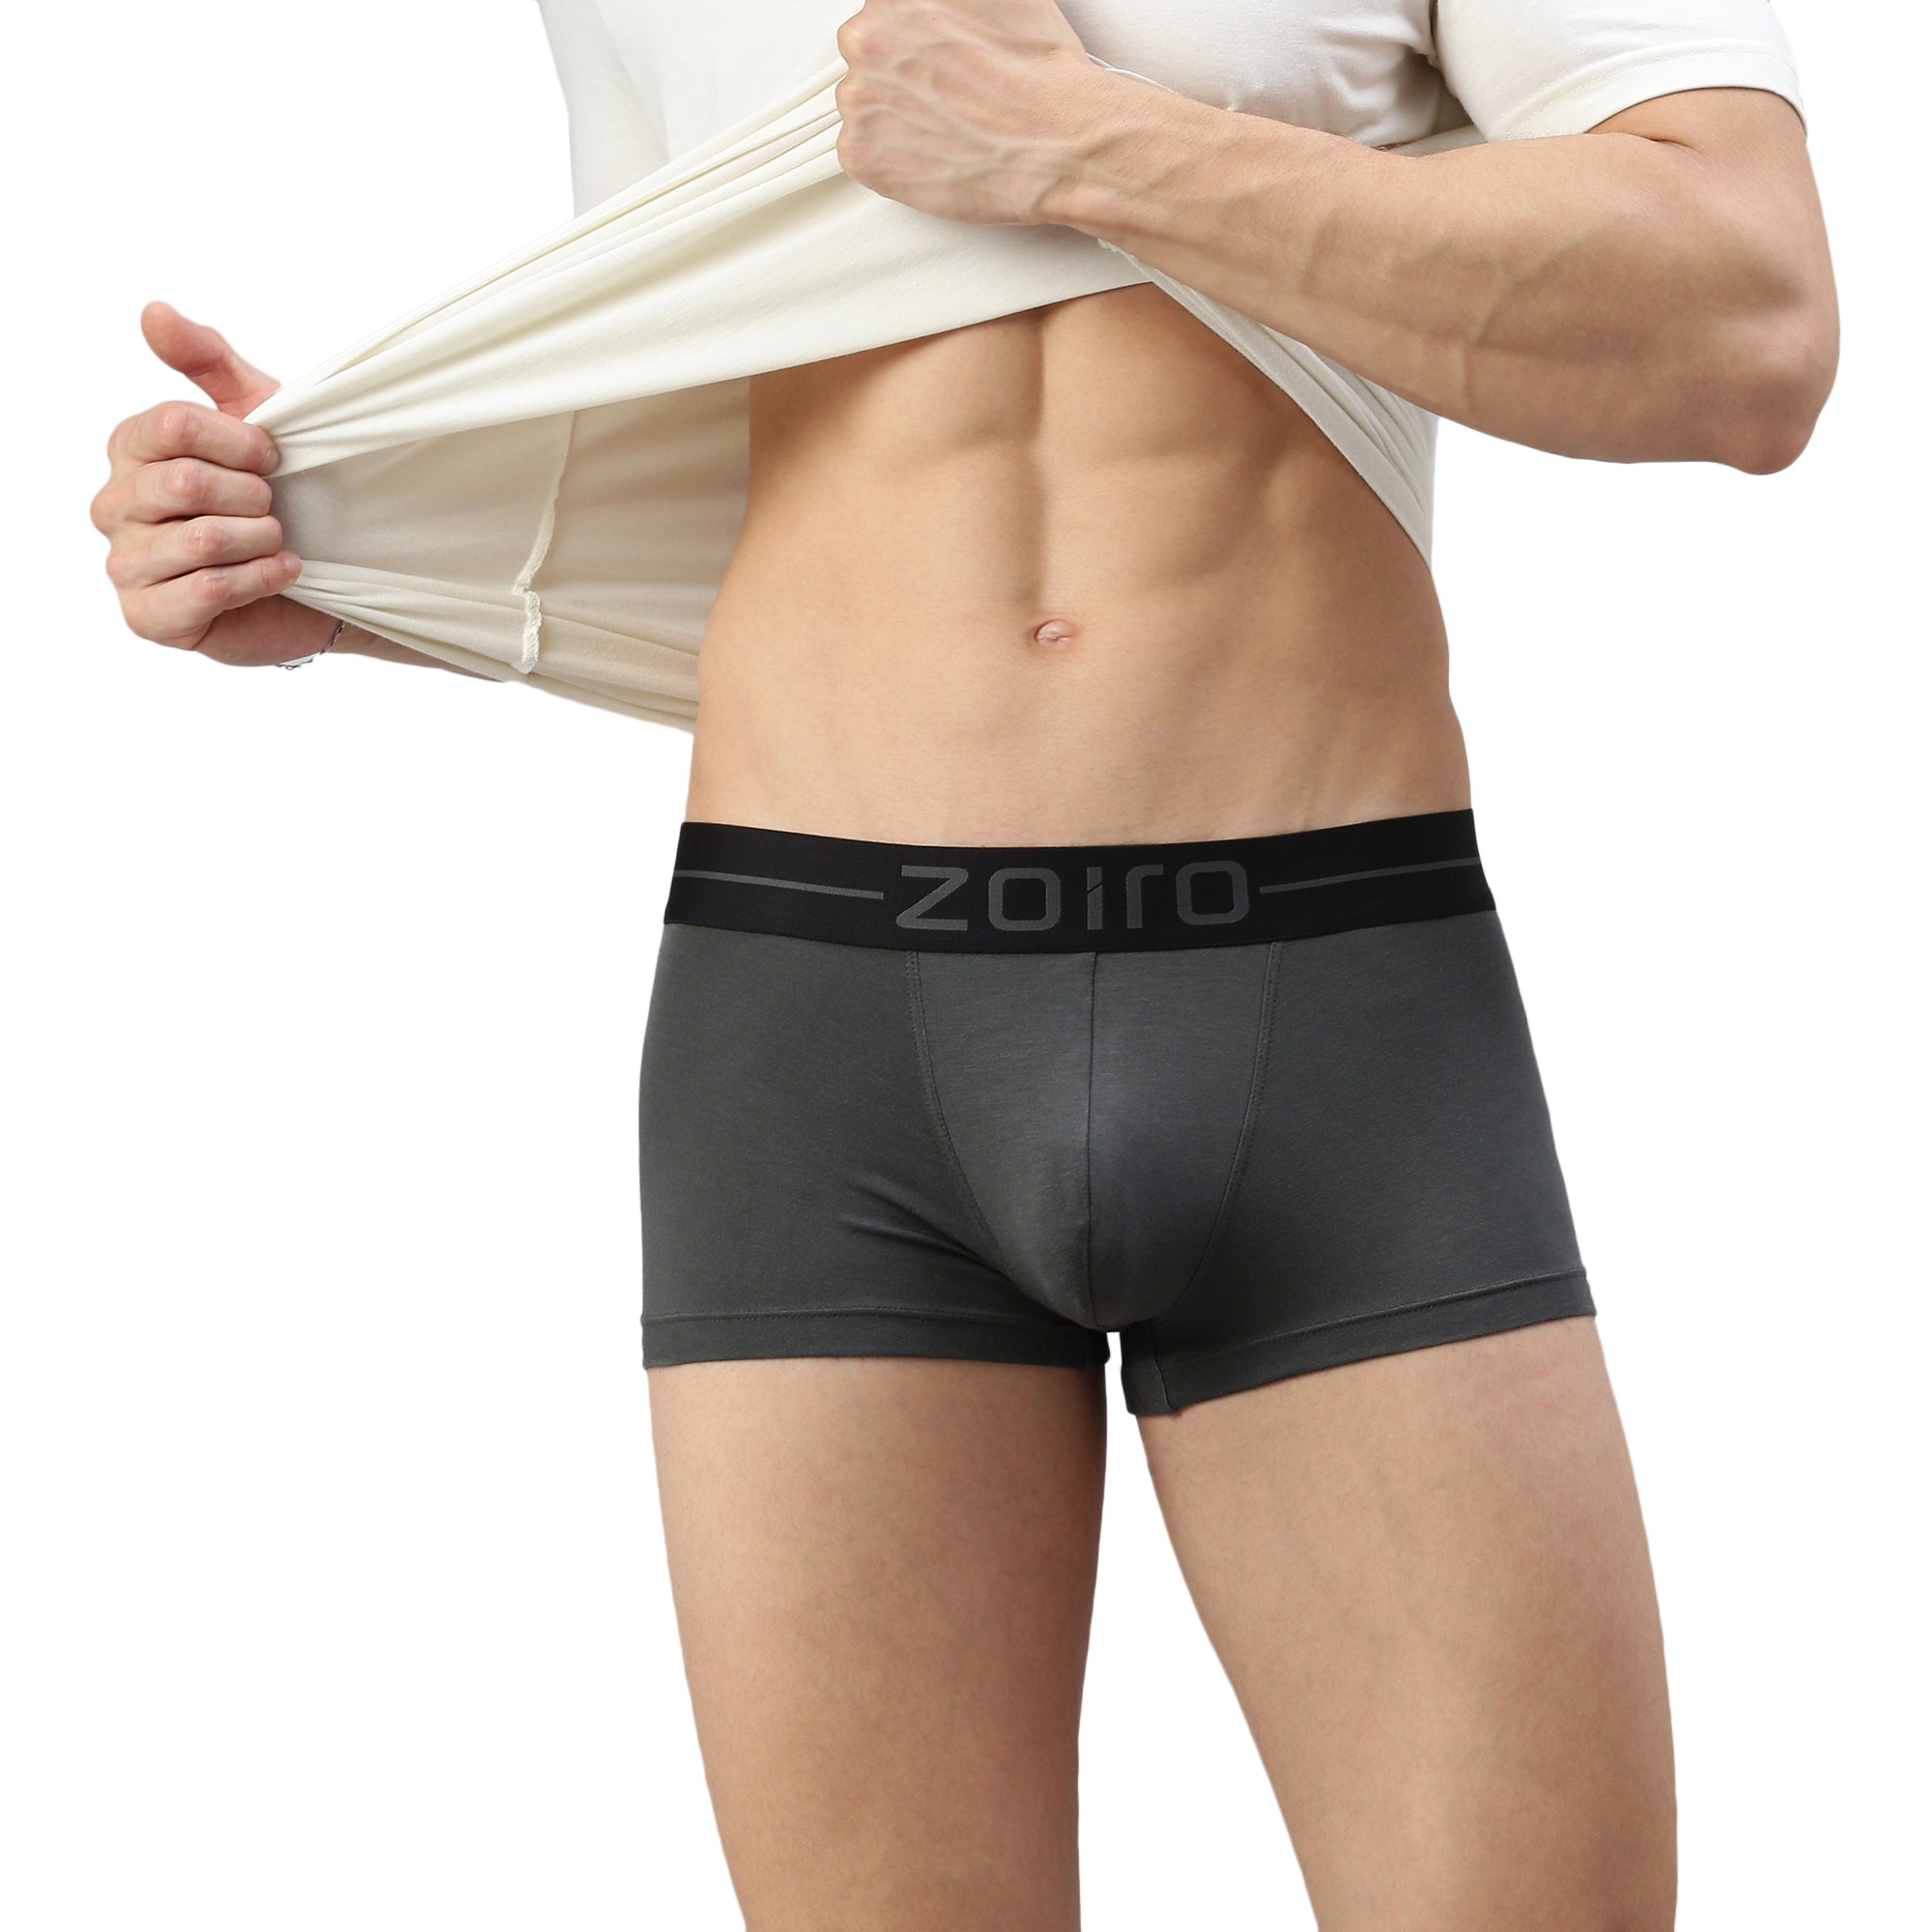 Zoiro Men&#39;s Modal Softs Solid Trunk Steel Grey